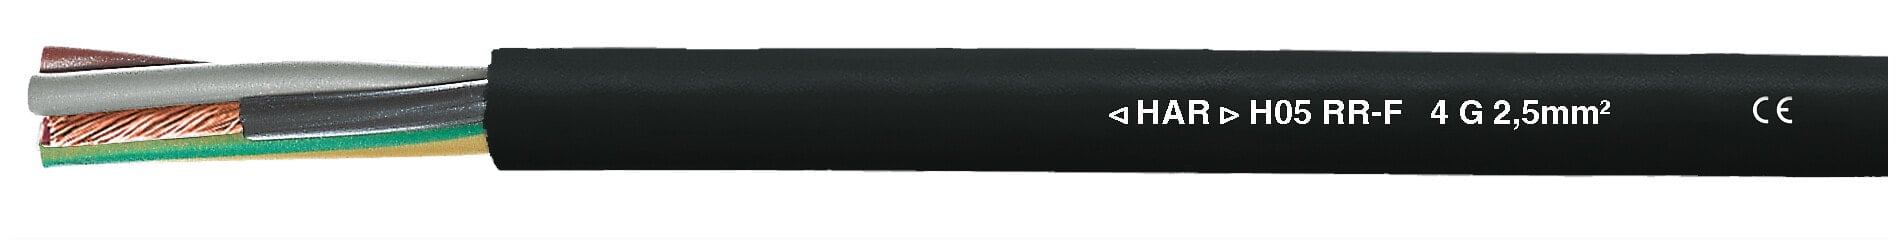 Helukabel H05RR-F - Black - Copper - 9.8 mm - 29 kg/km - 98 kg/km - 7.35 cm